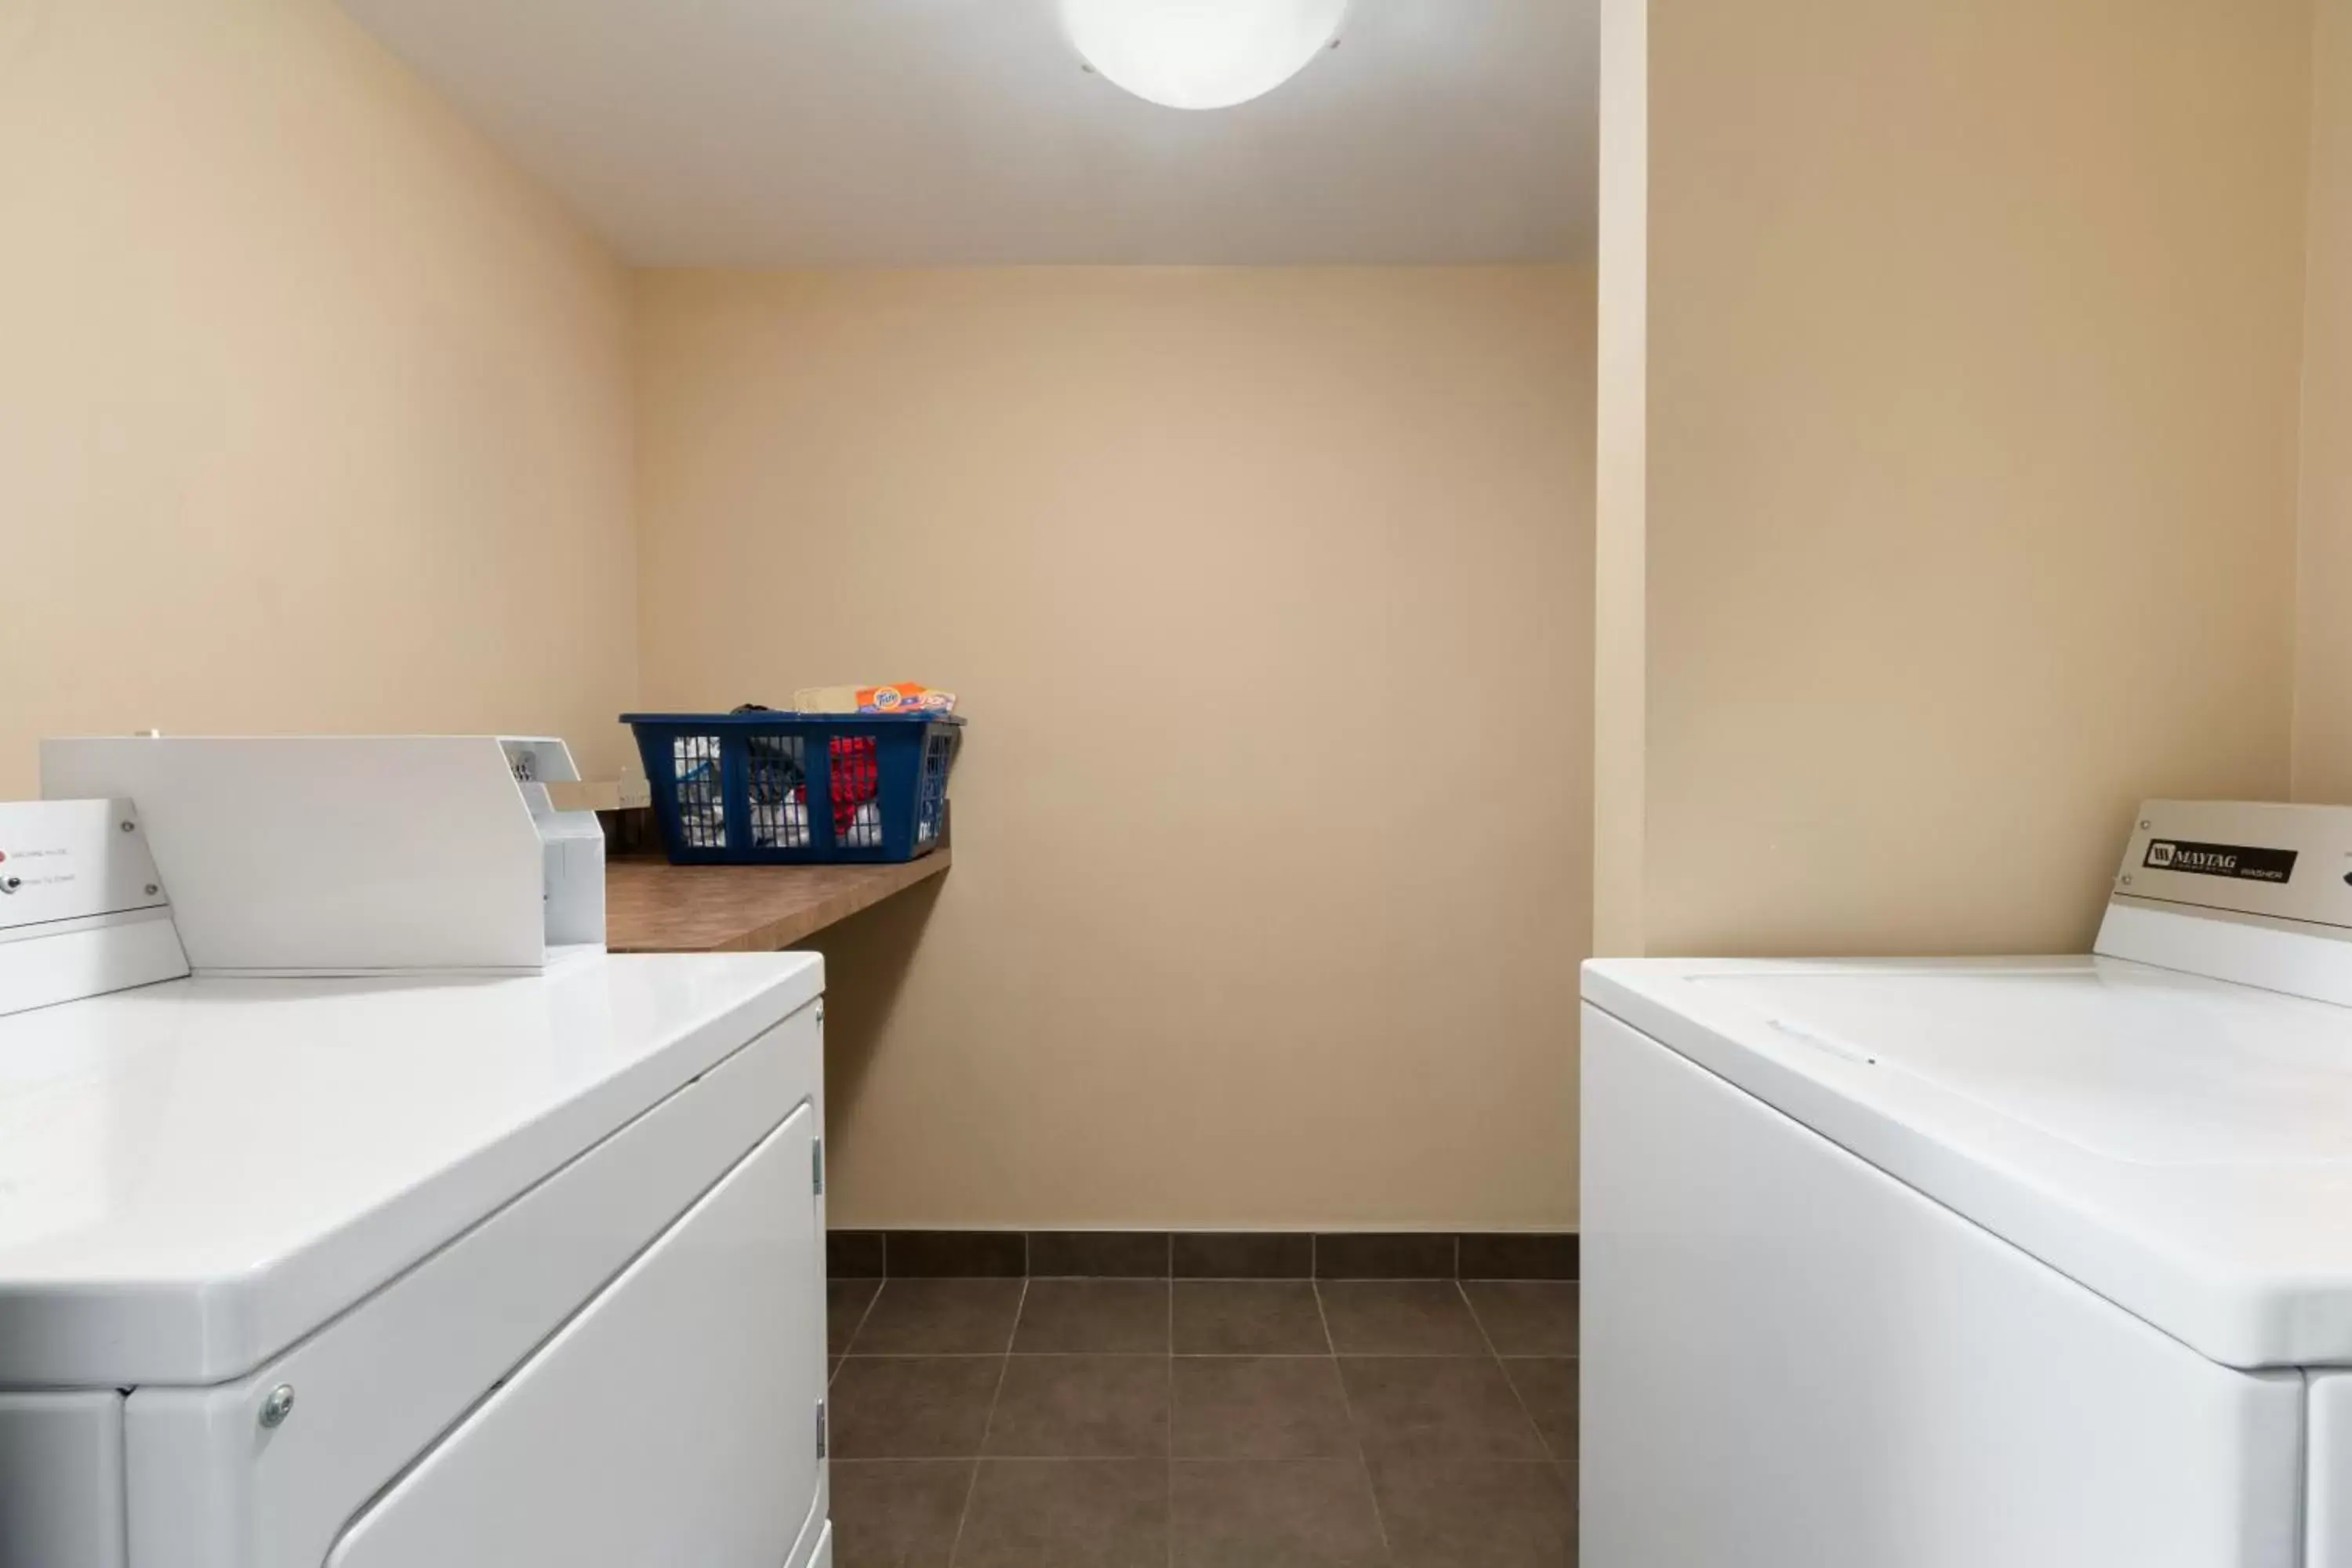 Other, Bathroom in Days Inn by Wyndham Calgary Northwest